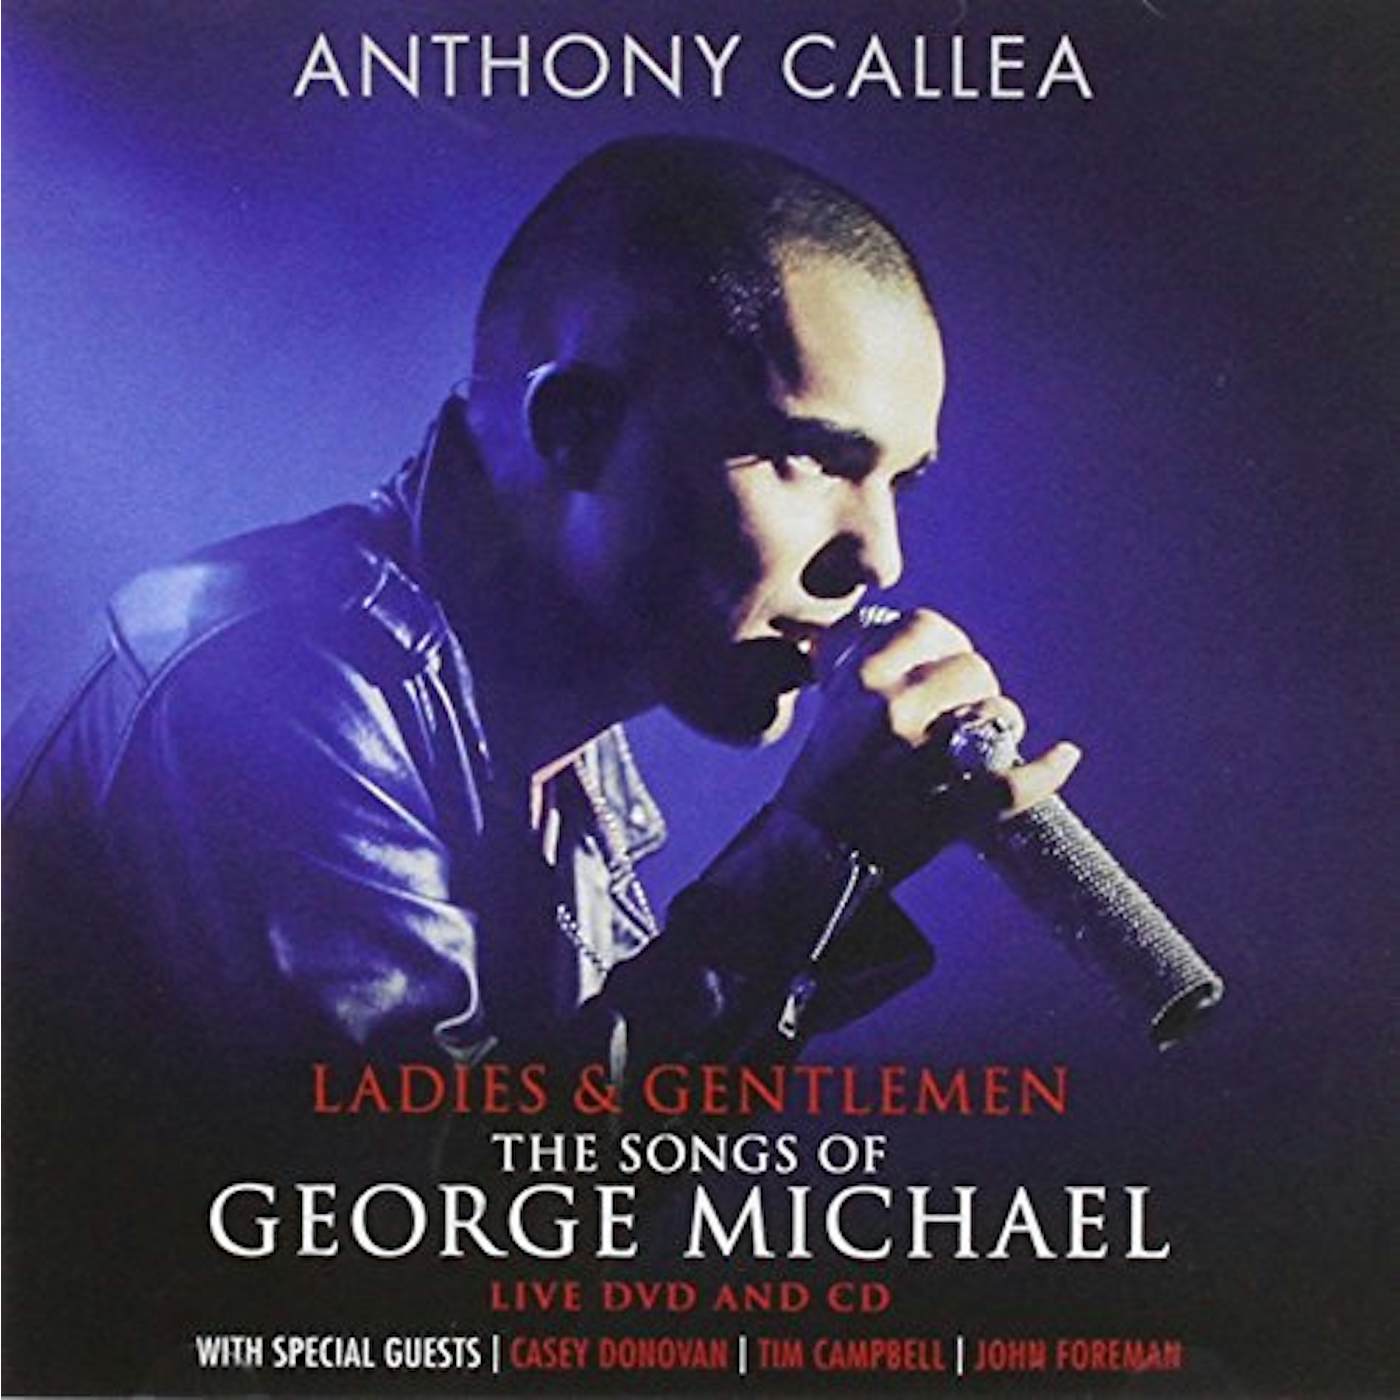 Anthony Callea LADIES & GENTLEMEN: SONGS OF GEORGE MICHAEL CD